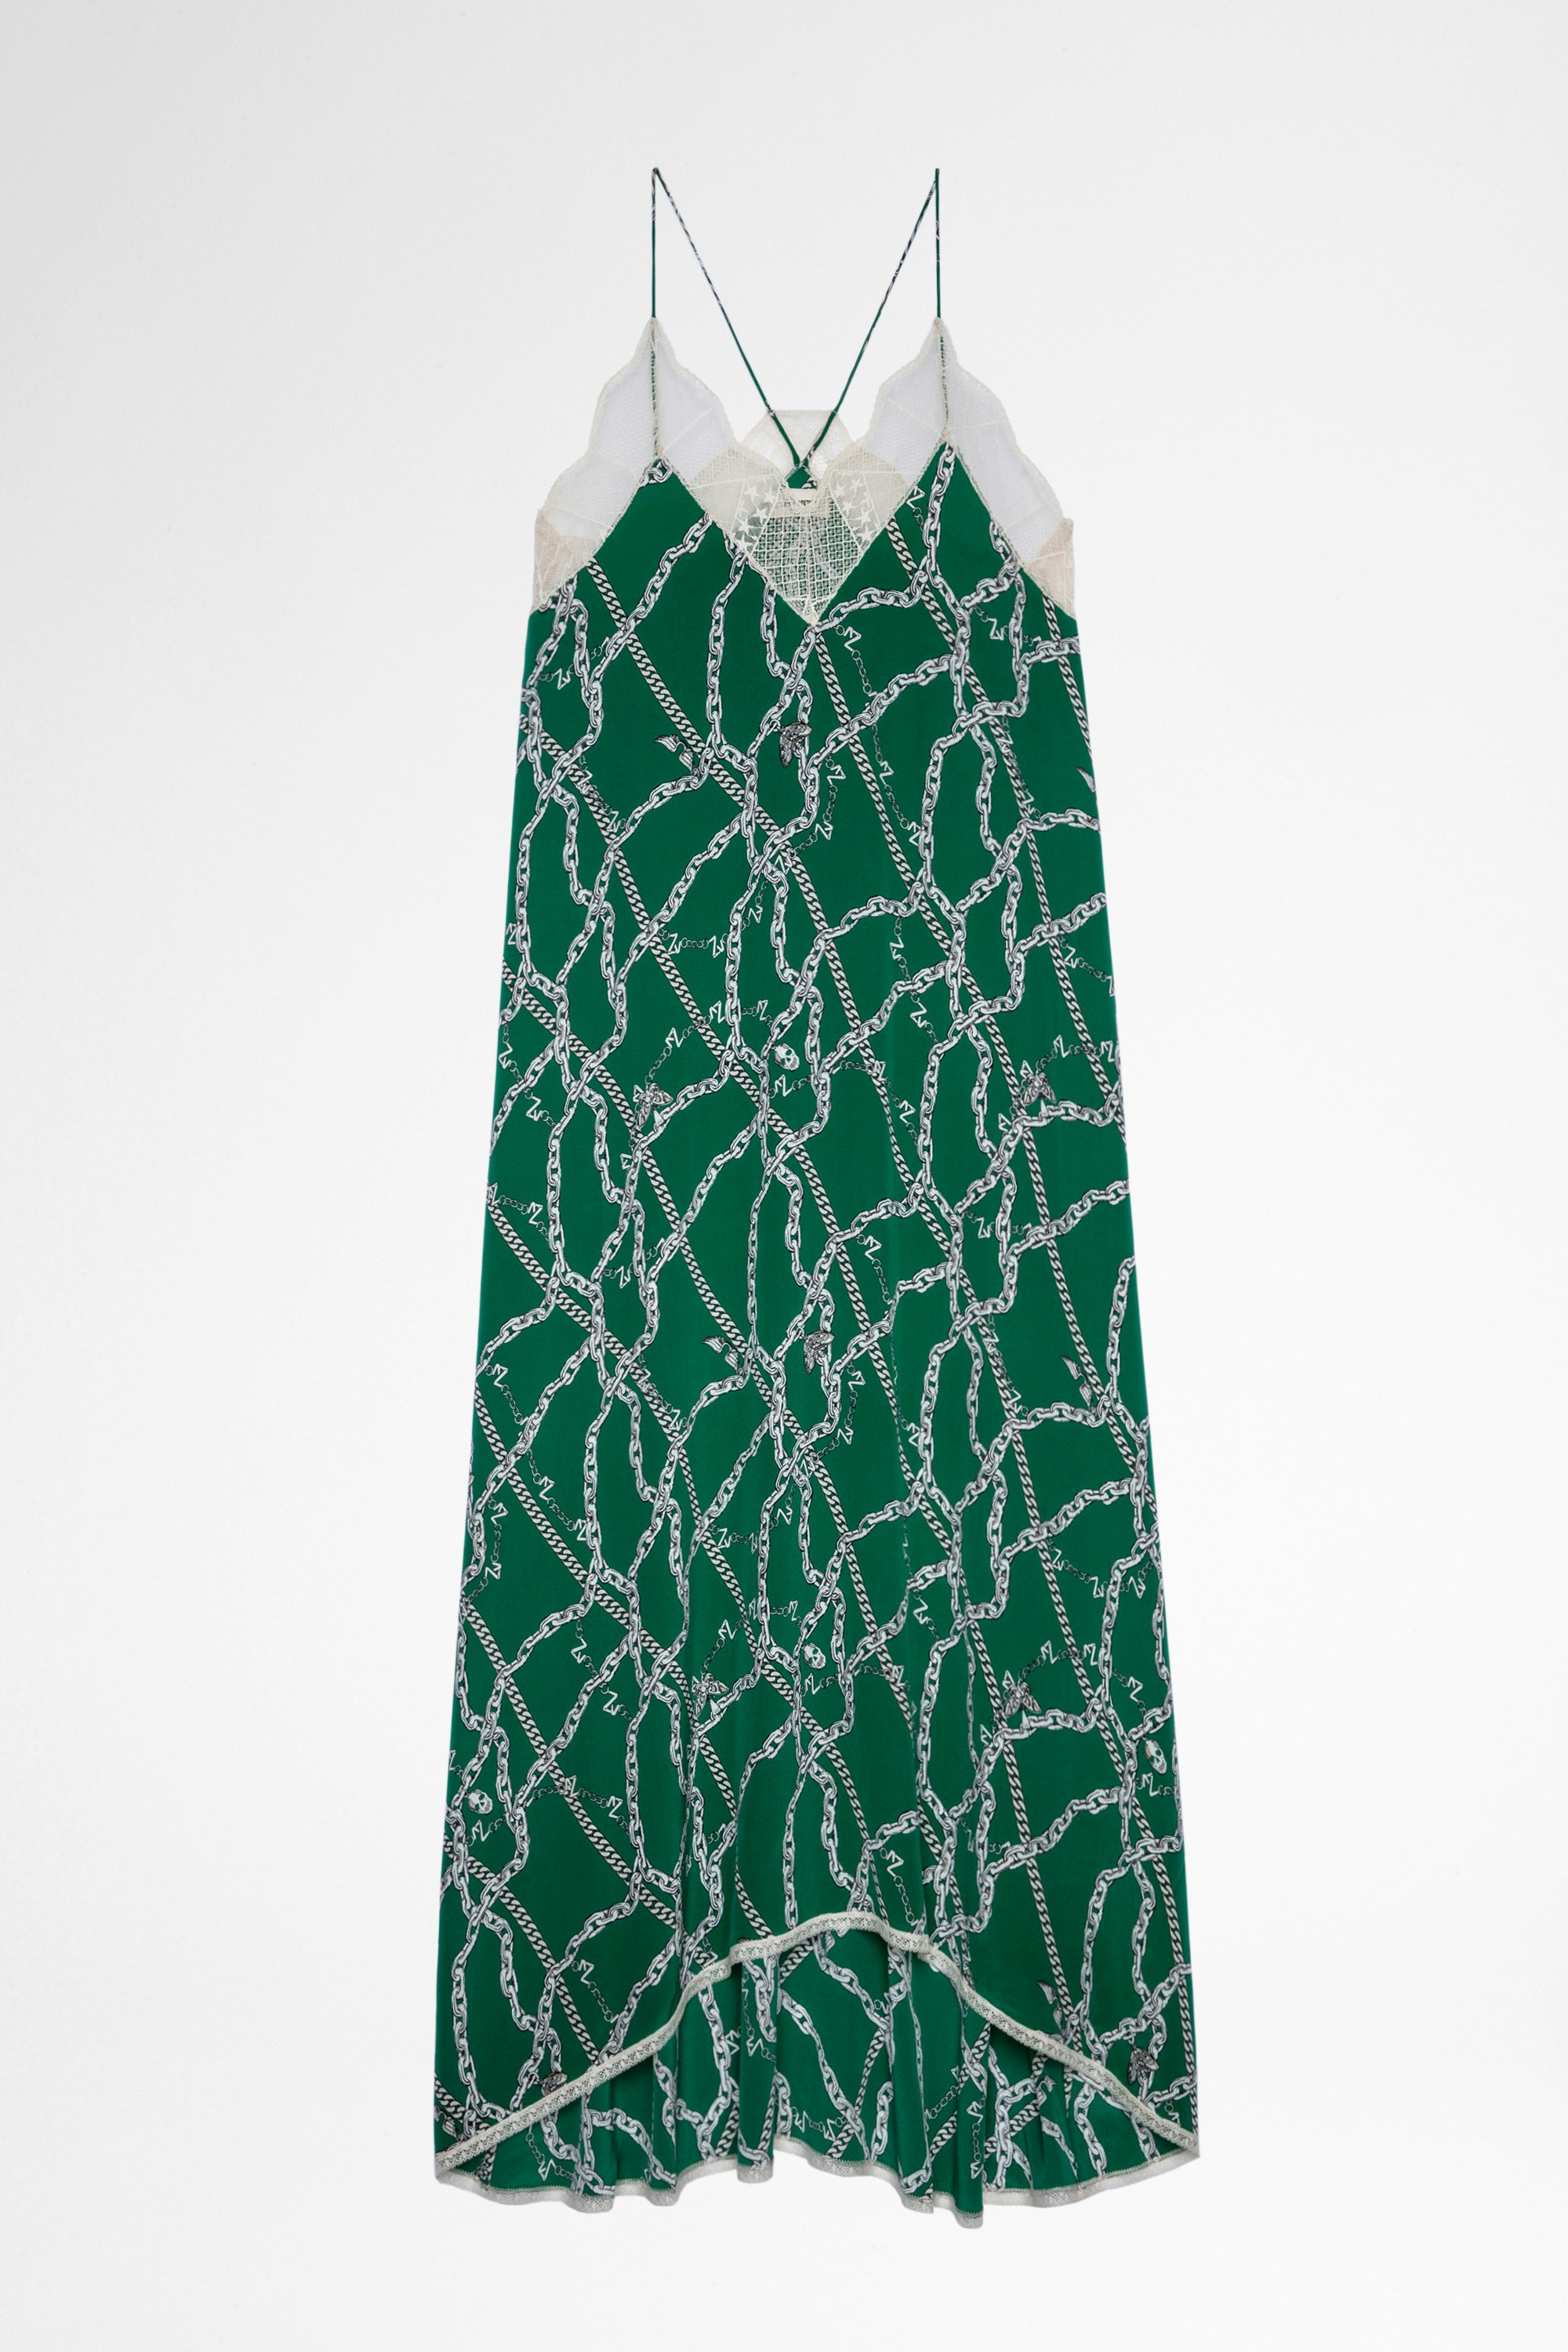 Kleid Risty Seide Damenkleid aus grüner Seide mit Kettenprint